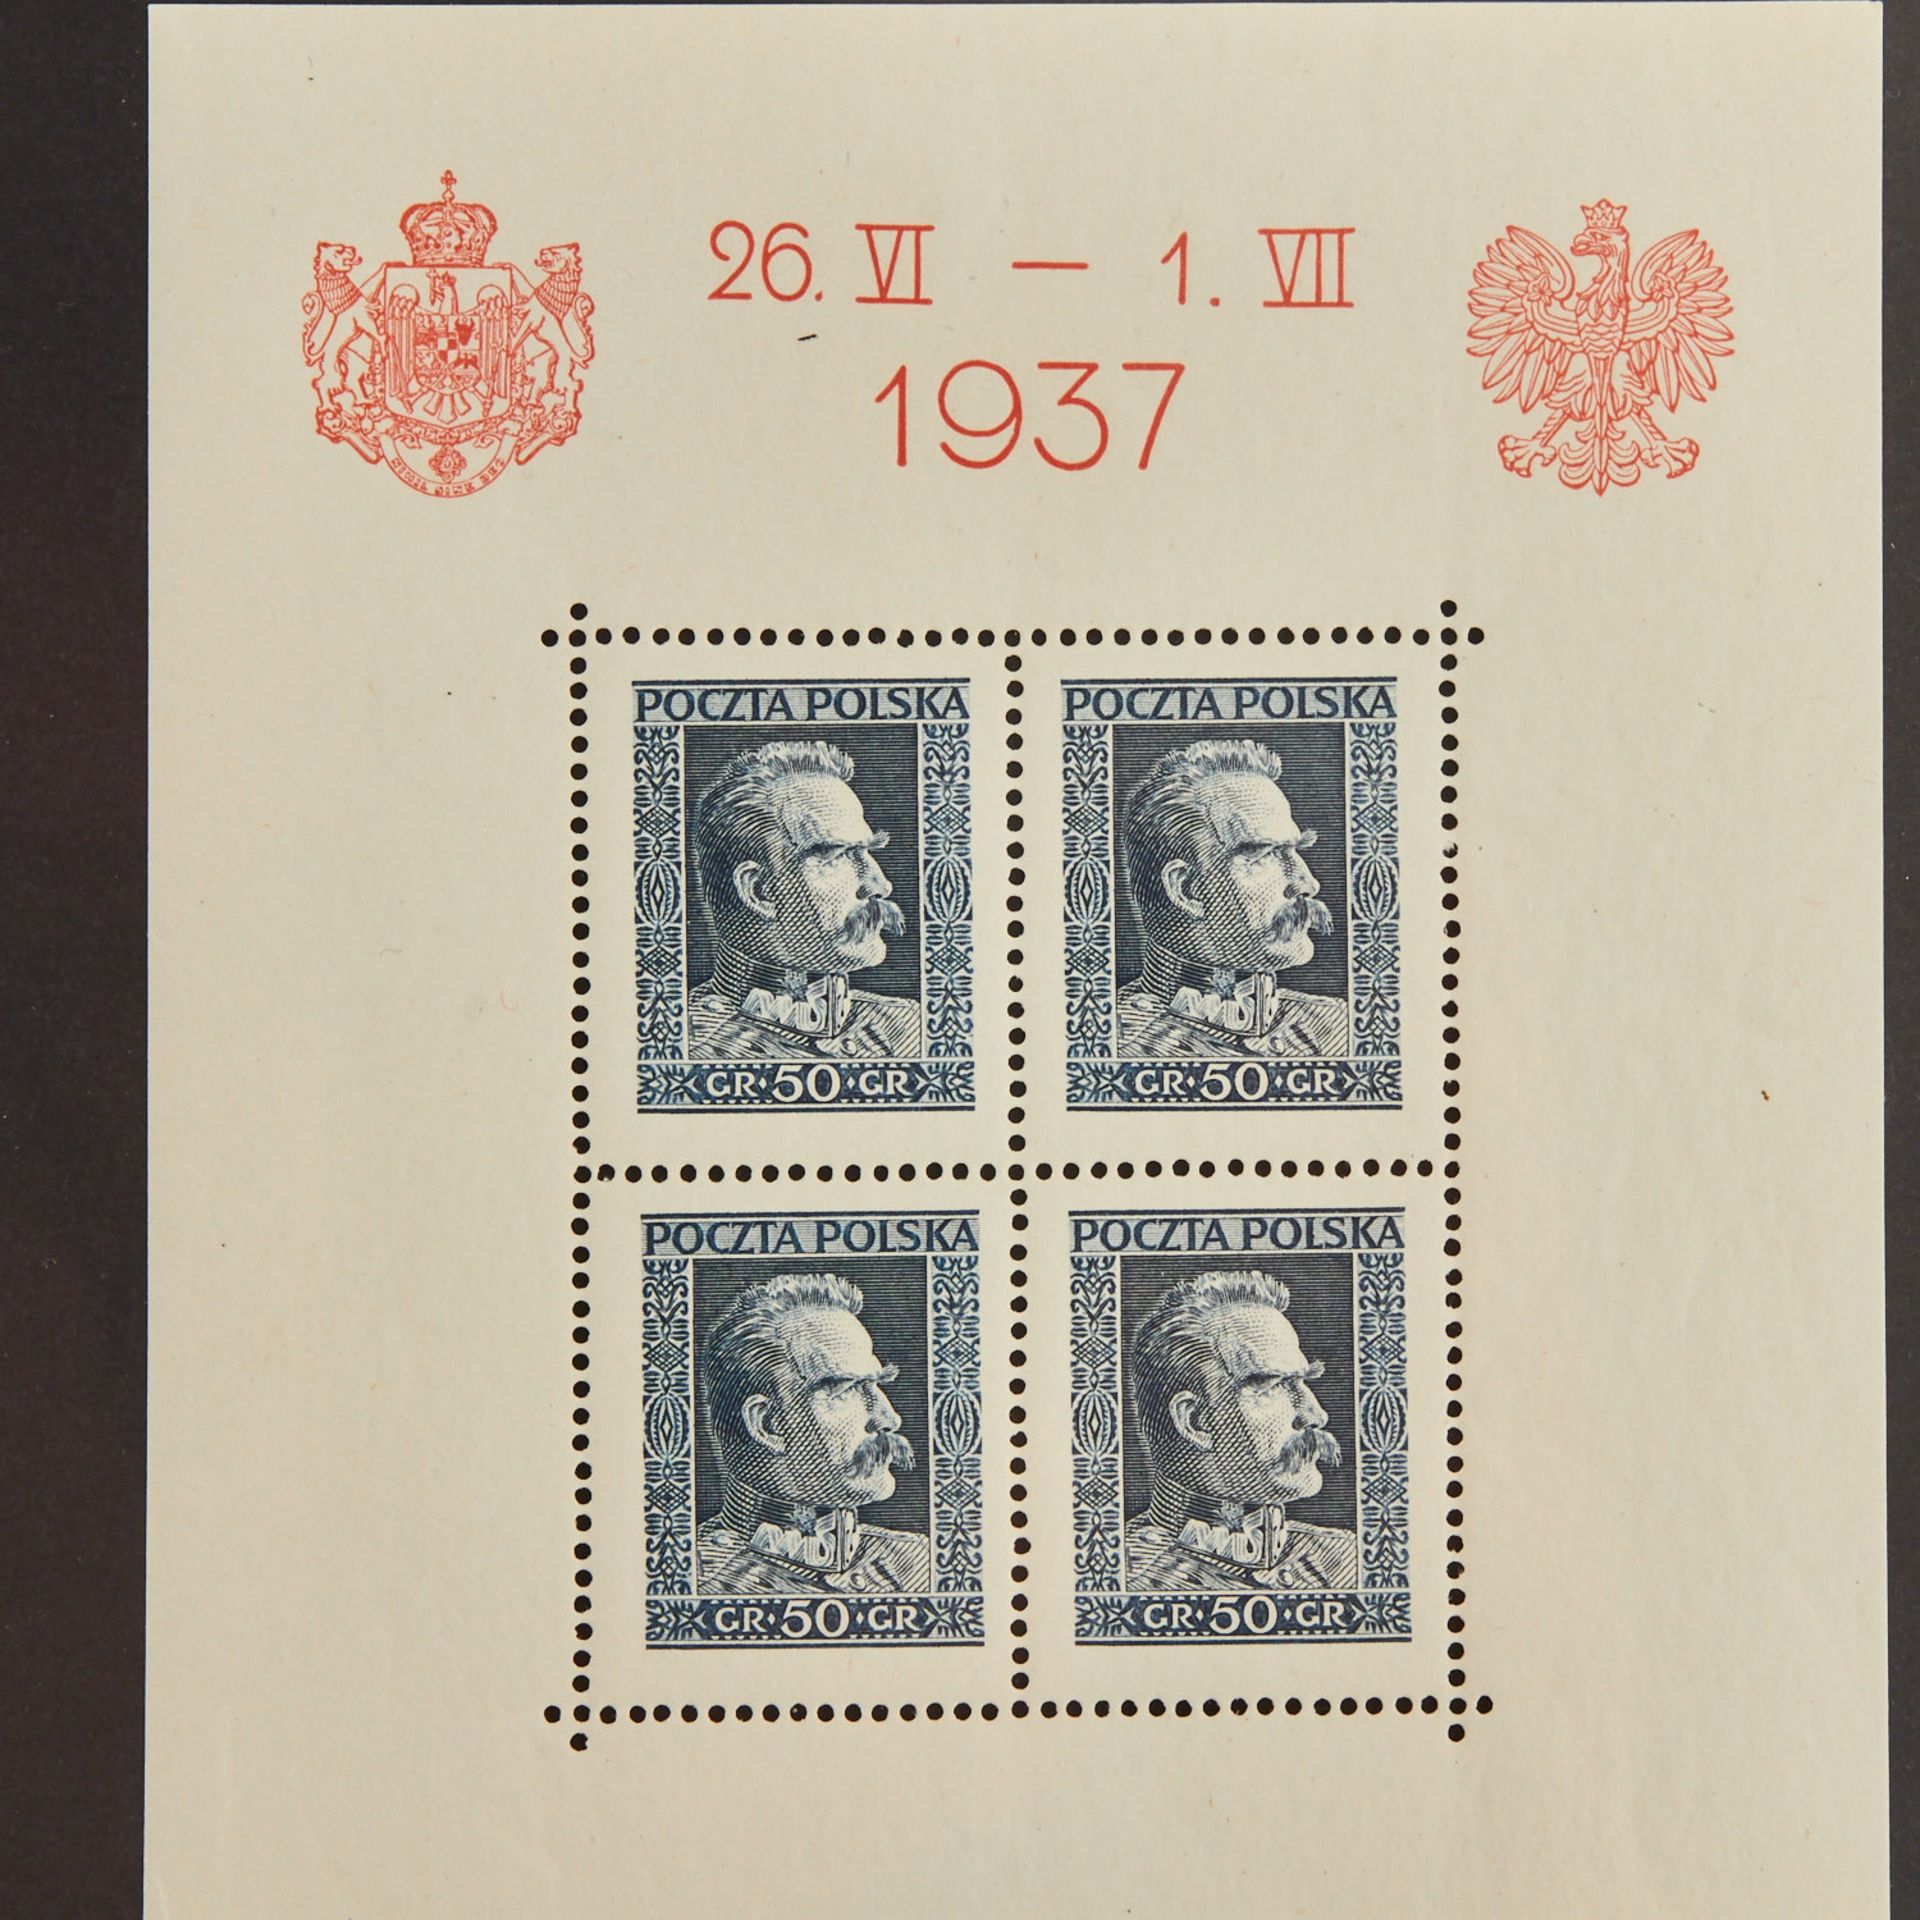 Polen - 1937, Block 2, 3 x postfrisch;Block 3, 2 x postfrisch ( 1 x min. Einschränkung); Block 4, - Bild 4 aus 4